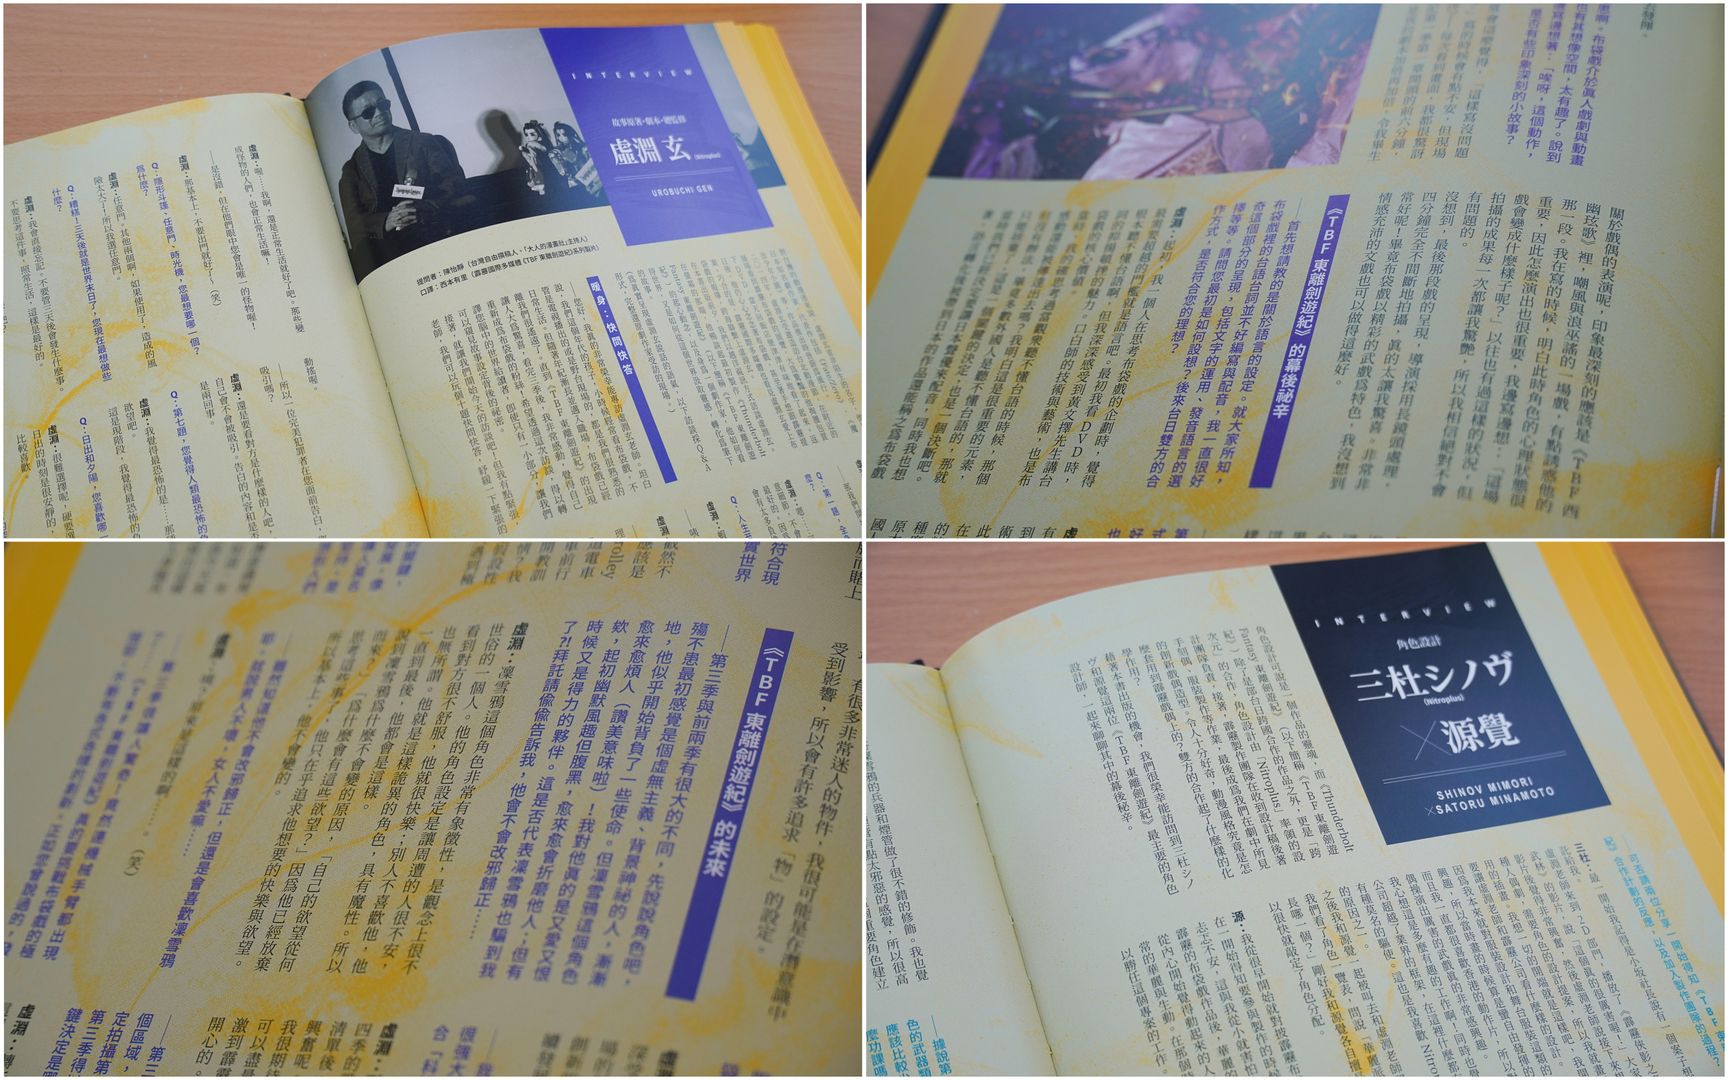 設定集最後更收錄了多達22頁、包括編劇虛淵玄、角色設計三杜シノヴ x源覺，以及霹靂團隊的訪談，讓粉絲更加深入了解整個《東離劍遊紀》的創作理念。